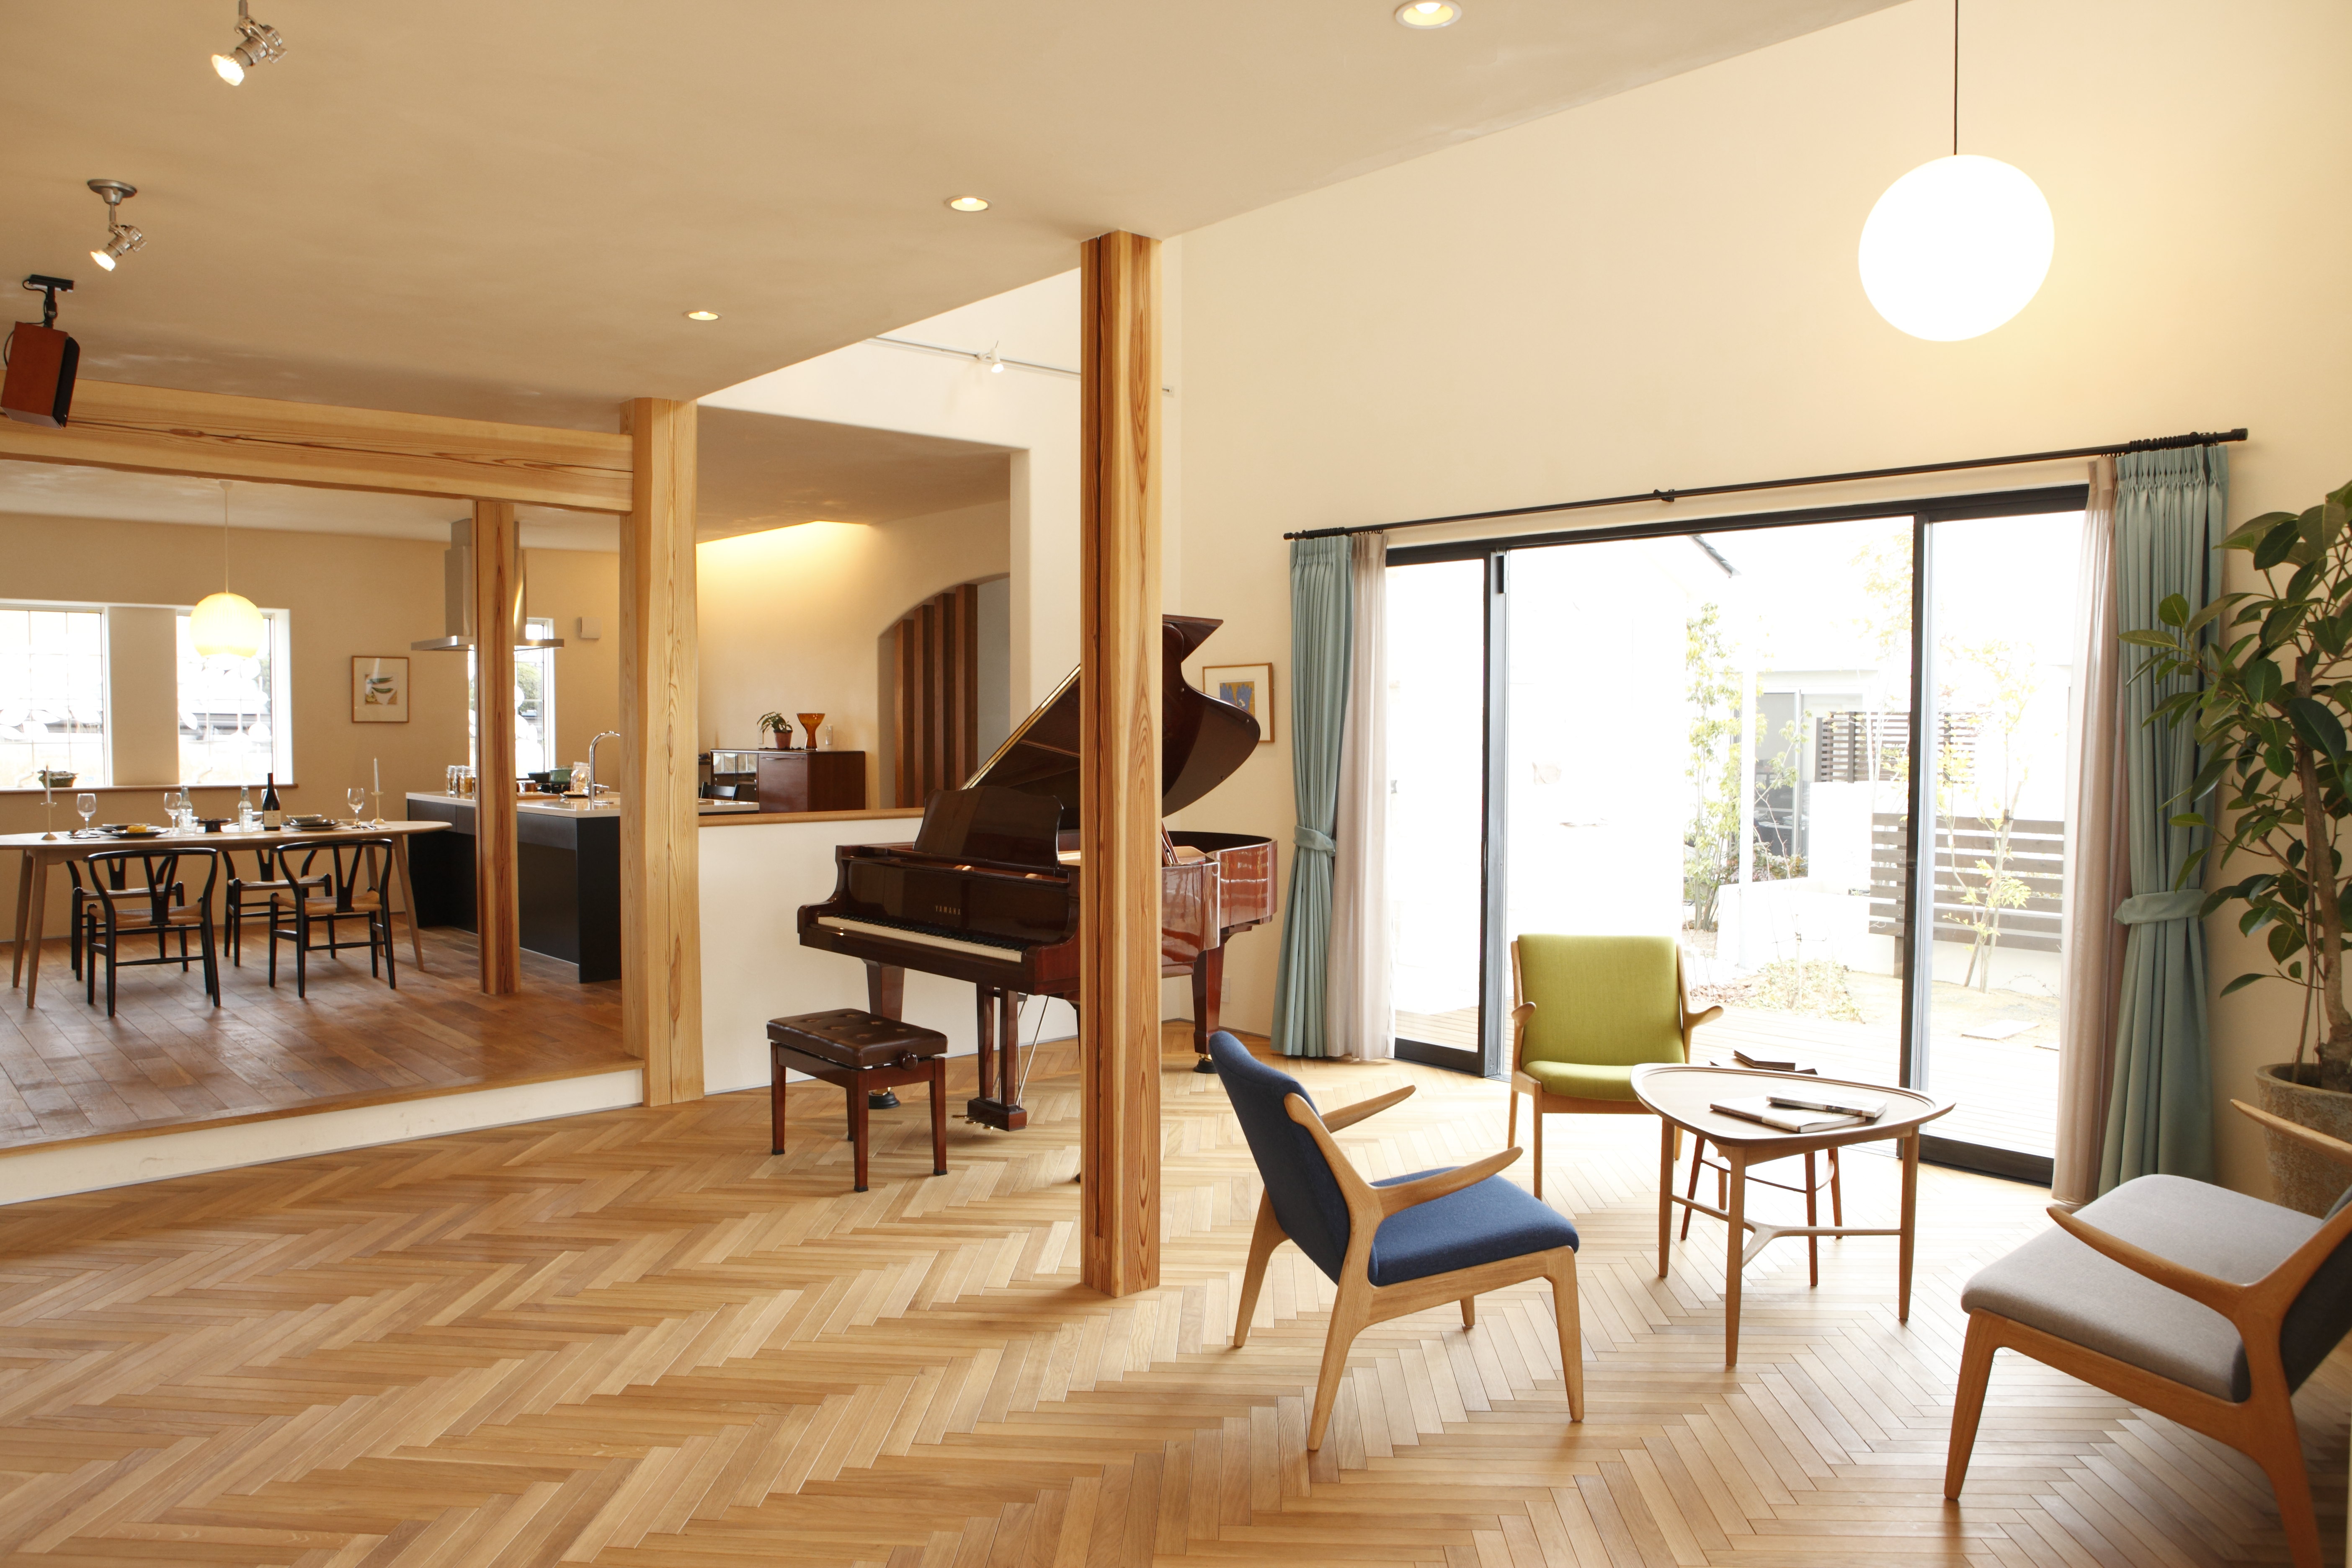 ヘリンボーン貼りにされたヨーロピアンオークの床が印象的なピアノホール。カーテンや家具は色づかいにこだわり、照明はシンプルにまとめたコーディネートにしました。